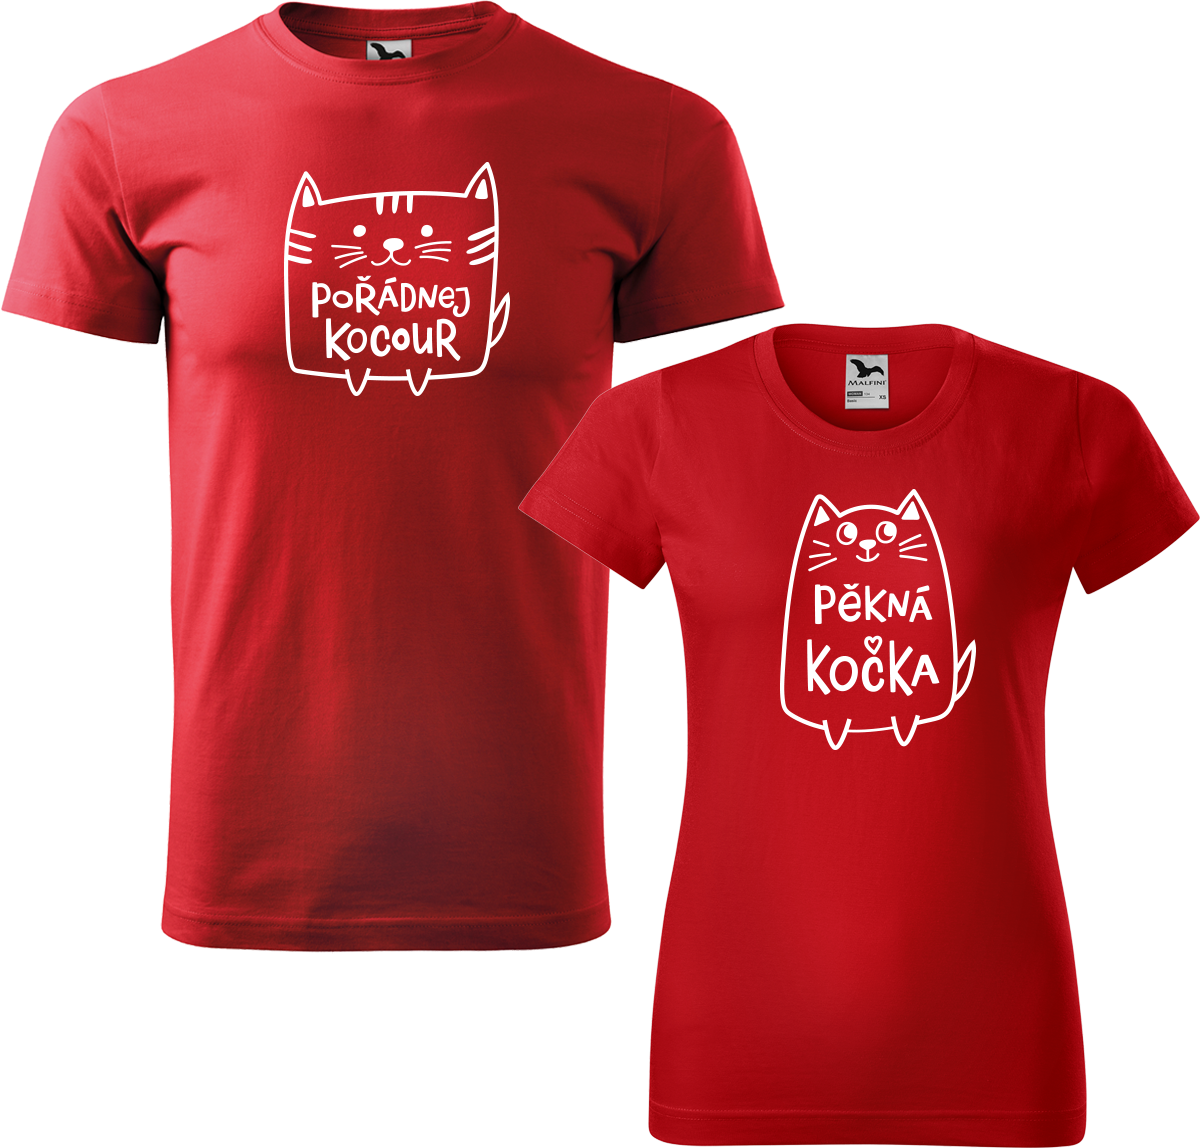 Trička pro páry - Pořádnej kocour a pěkná kočka Barva: Červená (07), Velikost dámské tričko: S, Velikost pánské tričko: M